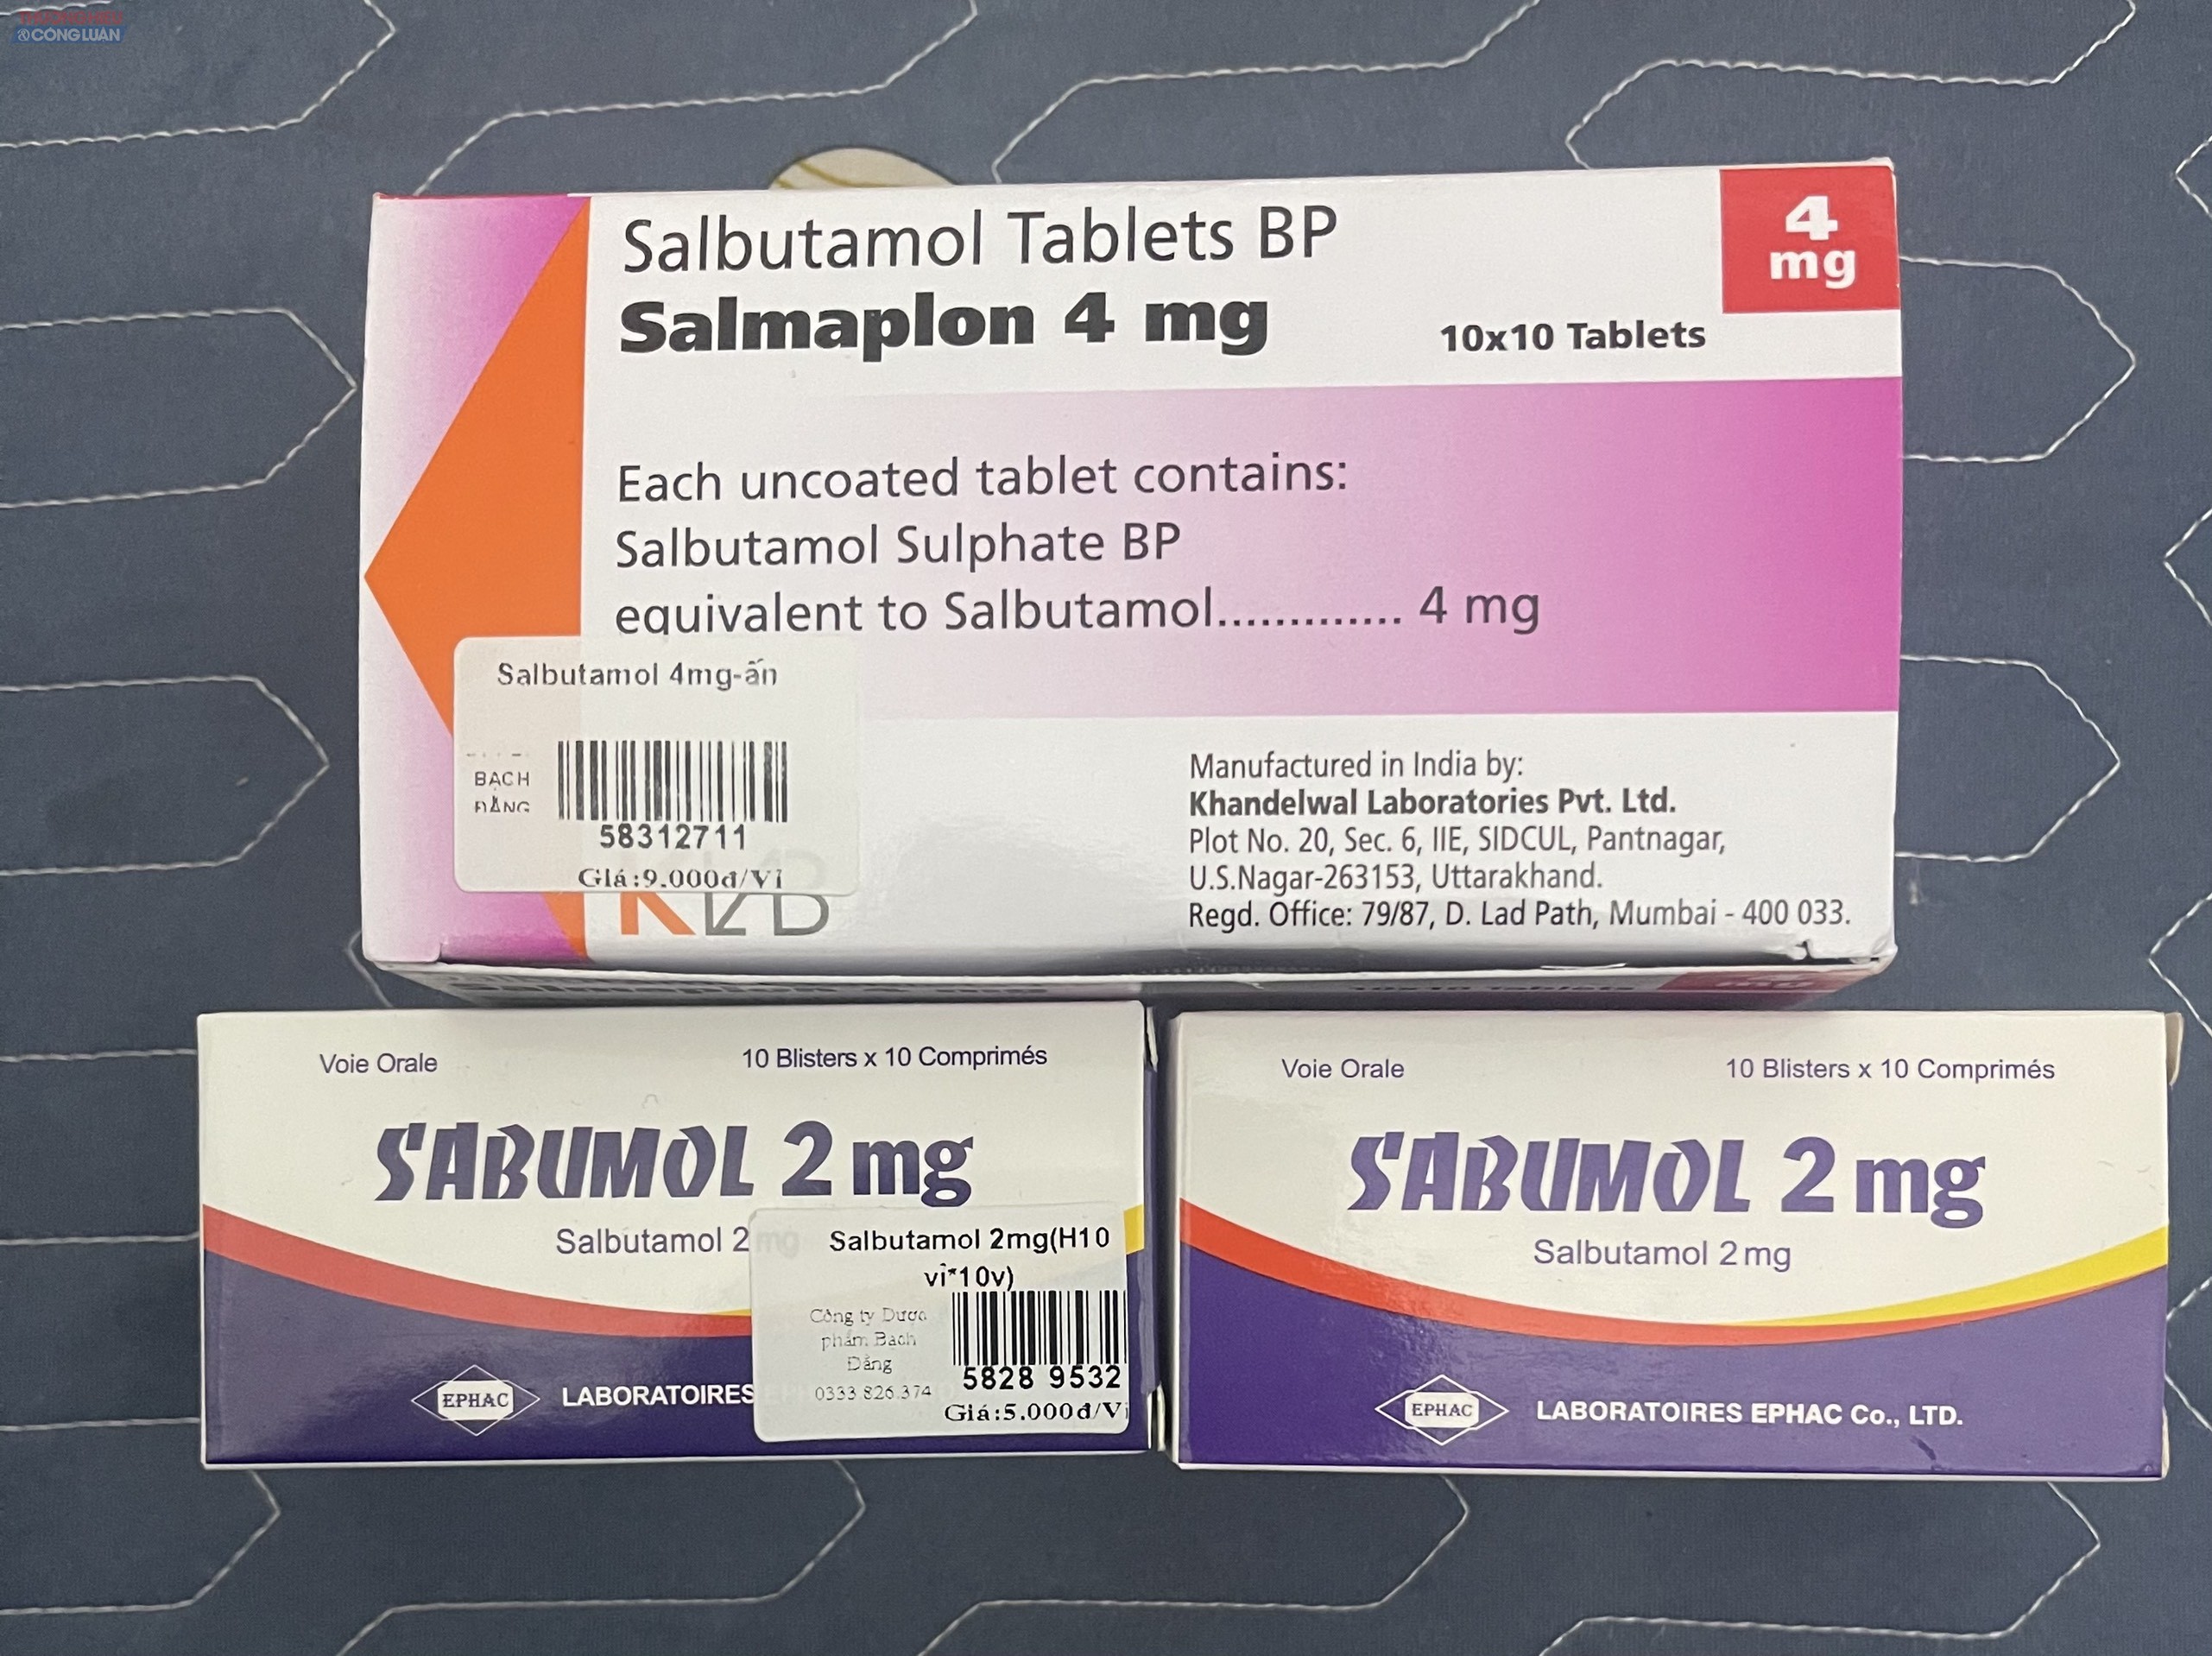 Thuốc chứa thành phần Salbutamol được mua tại 3 hiệu thuốc thuộc Công ty TNHH Dược phẩm Bạch Đằng toàn tiếng nước ngoài, trên bao bì không có số đăng ký, không có tem nhãn phụ bằng tiếng Việt?